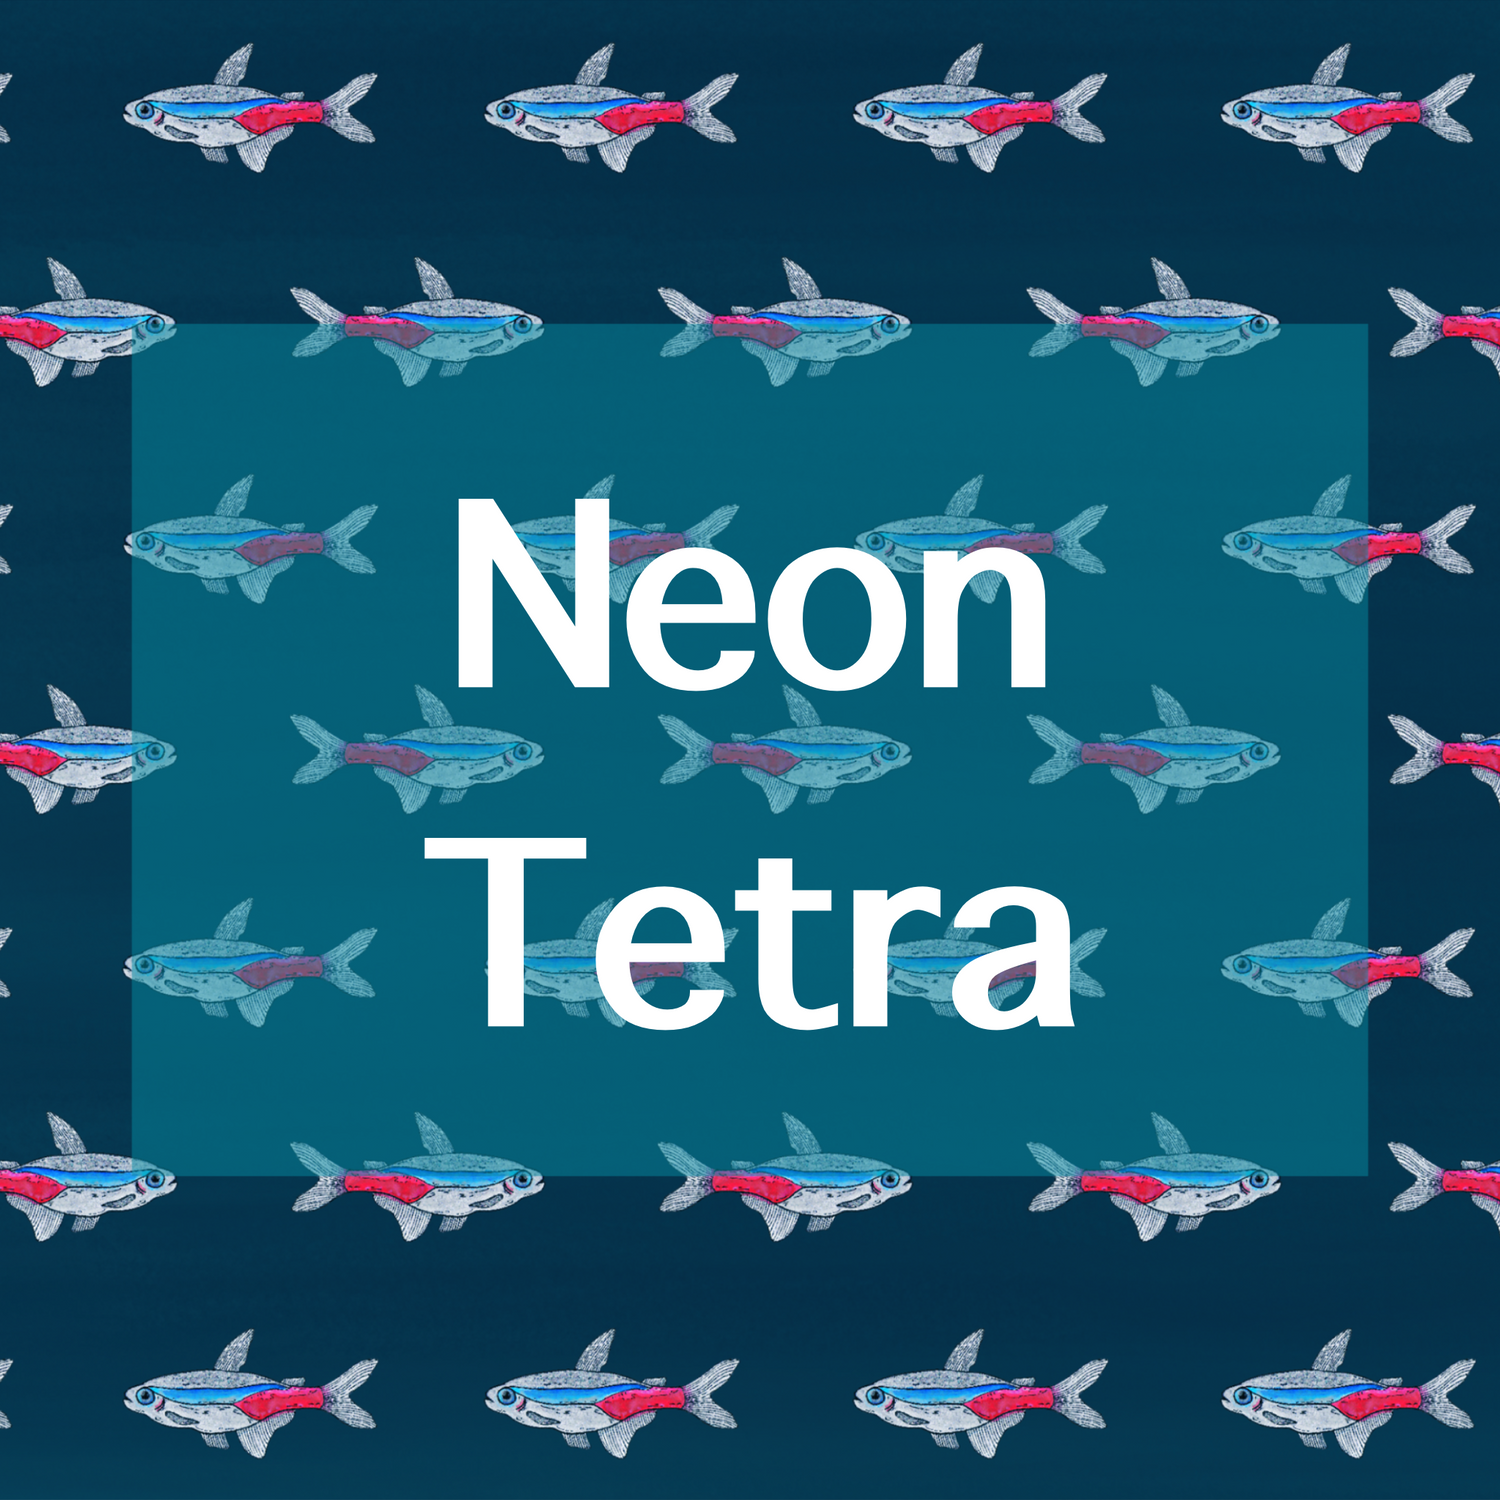 Neon Tetra